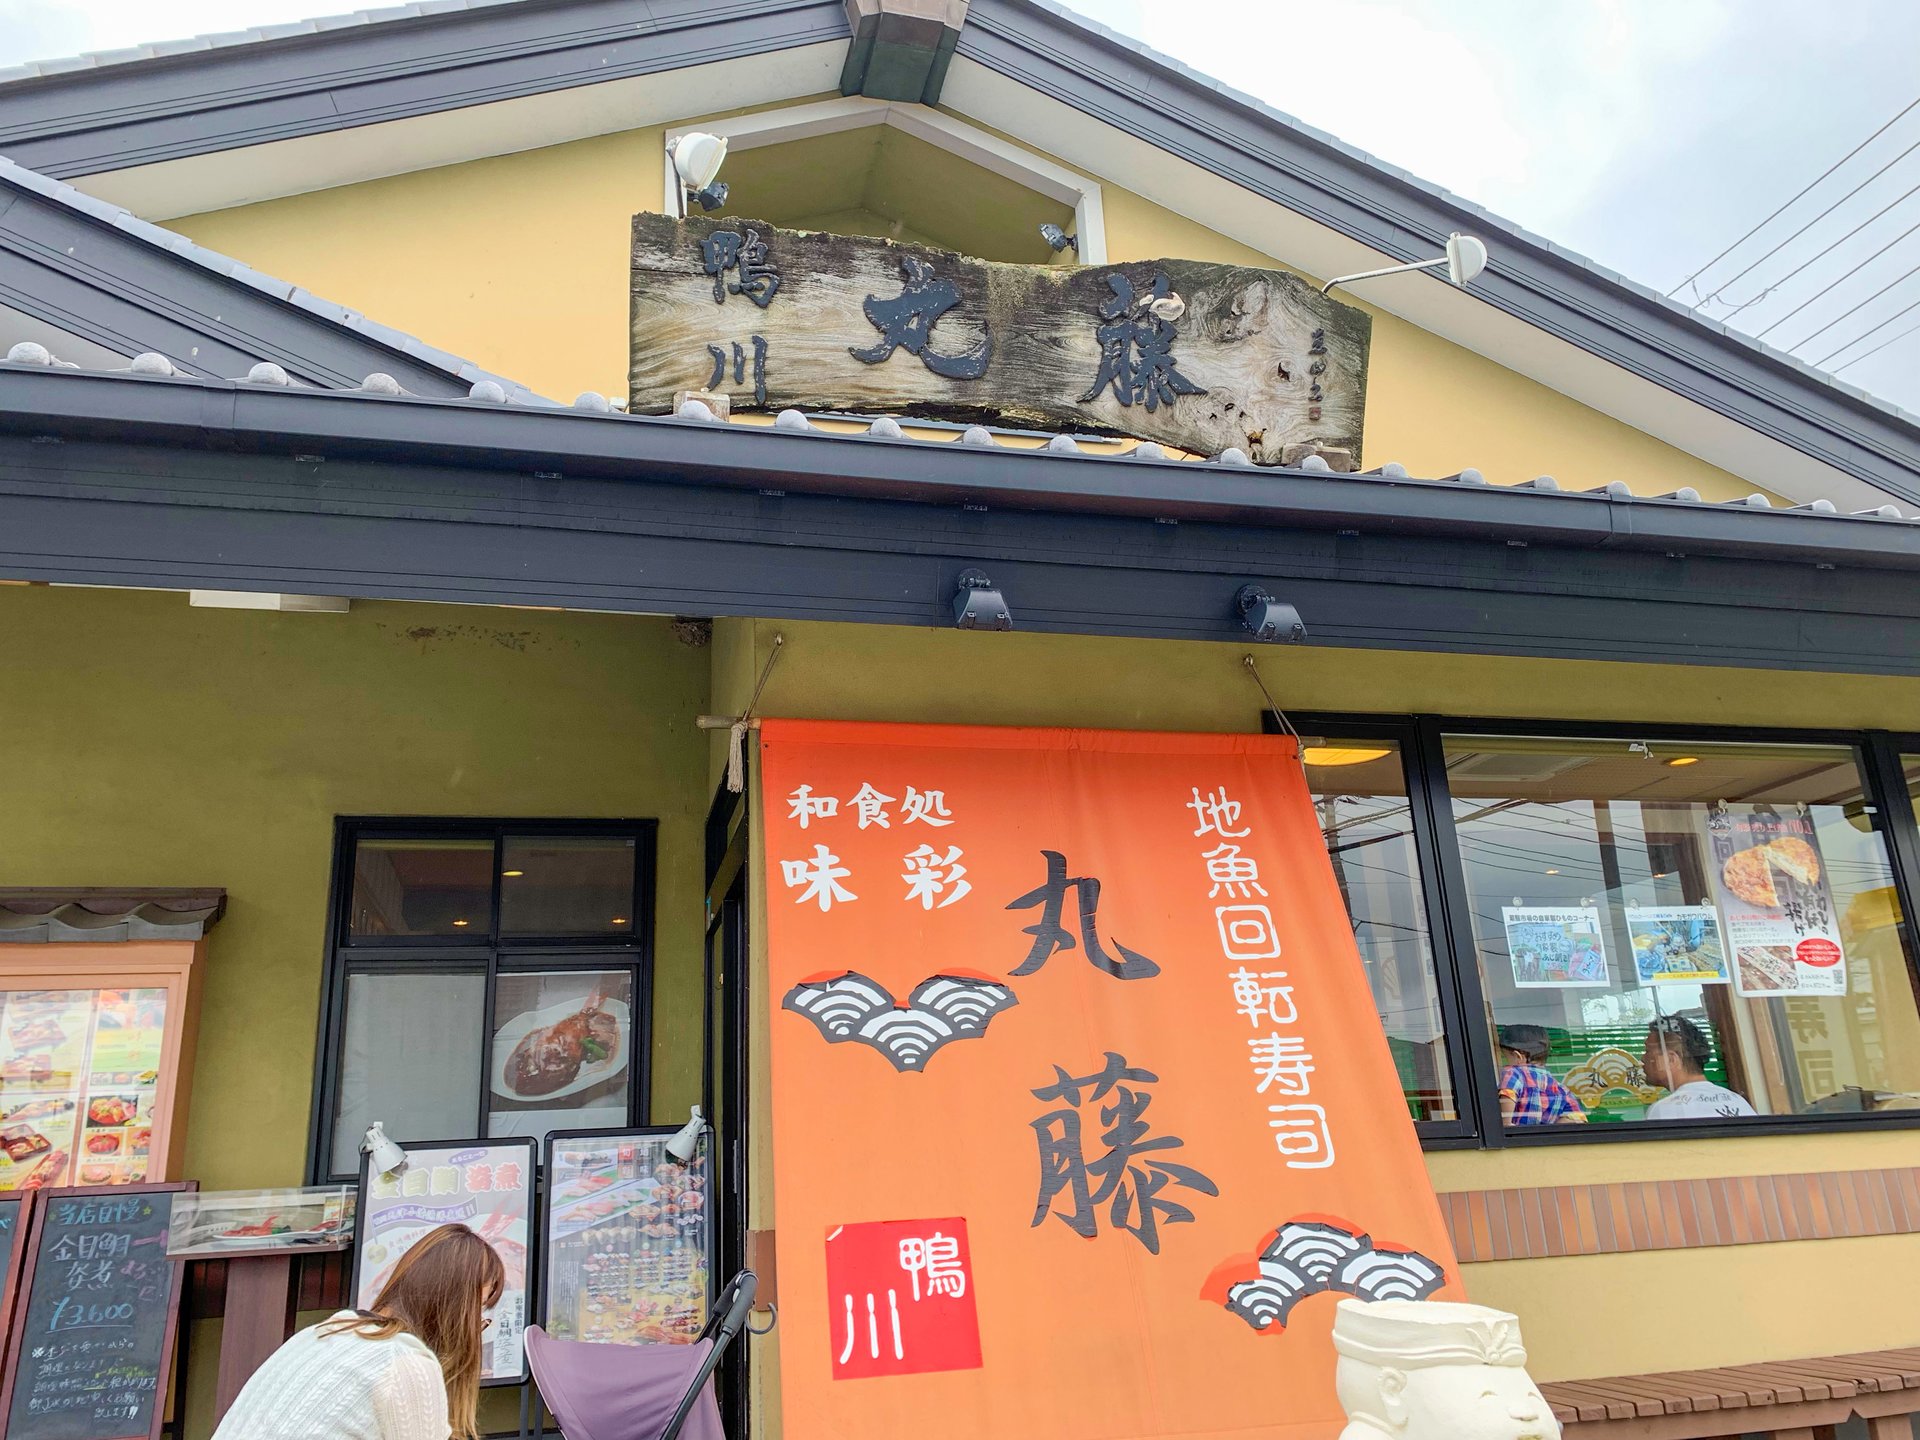 地魚回転寿司 丸藤 本店